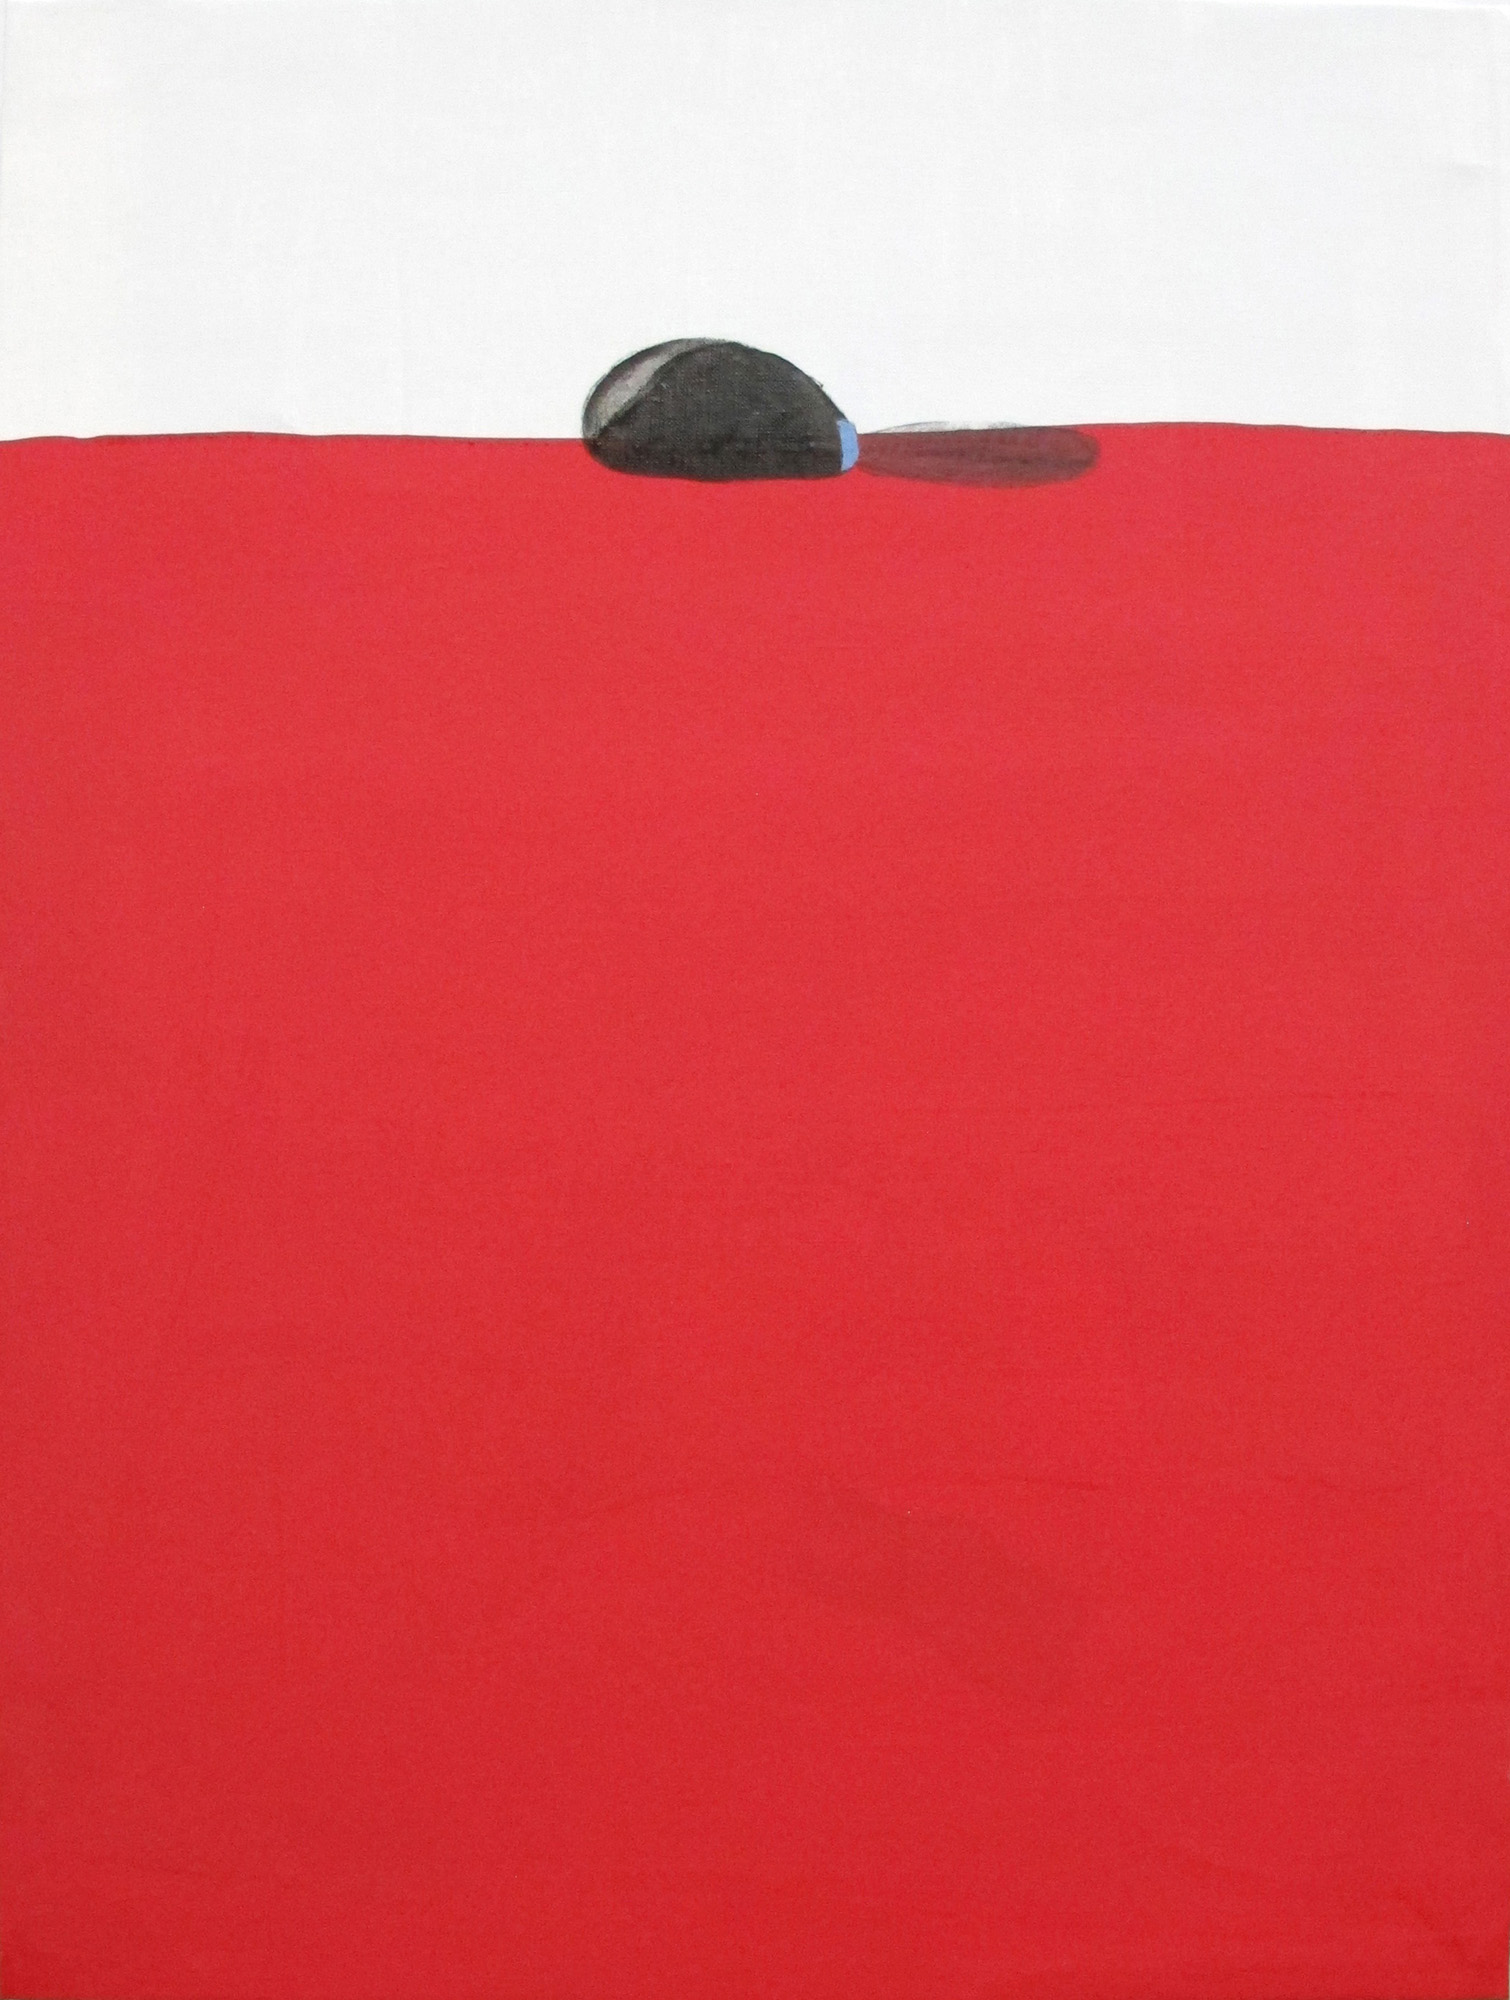 Horizonte Pezón, 2011, técnica mixta sobre lino, 80 x 61 cm.